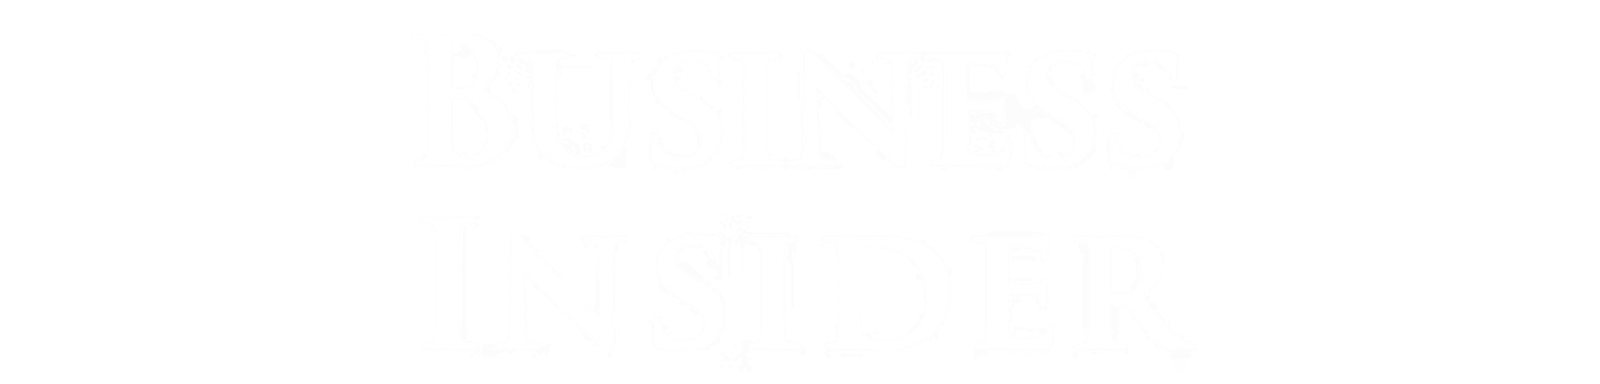 Business Insider logo Png